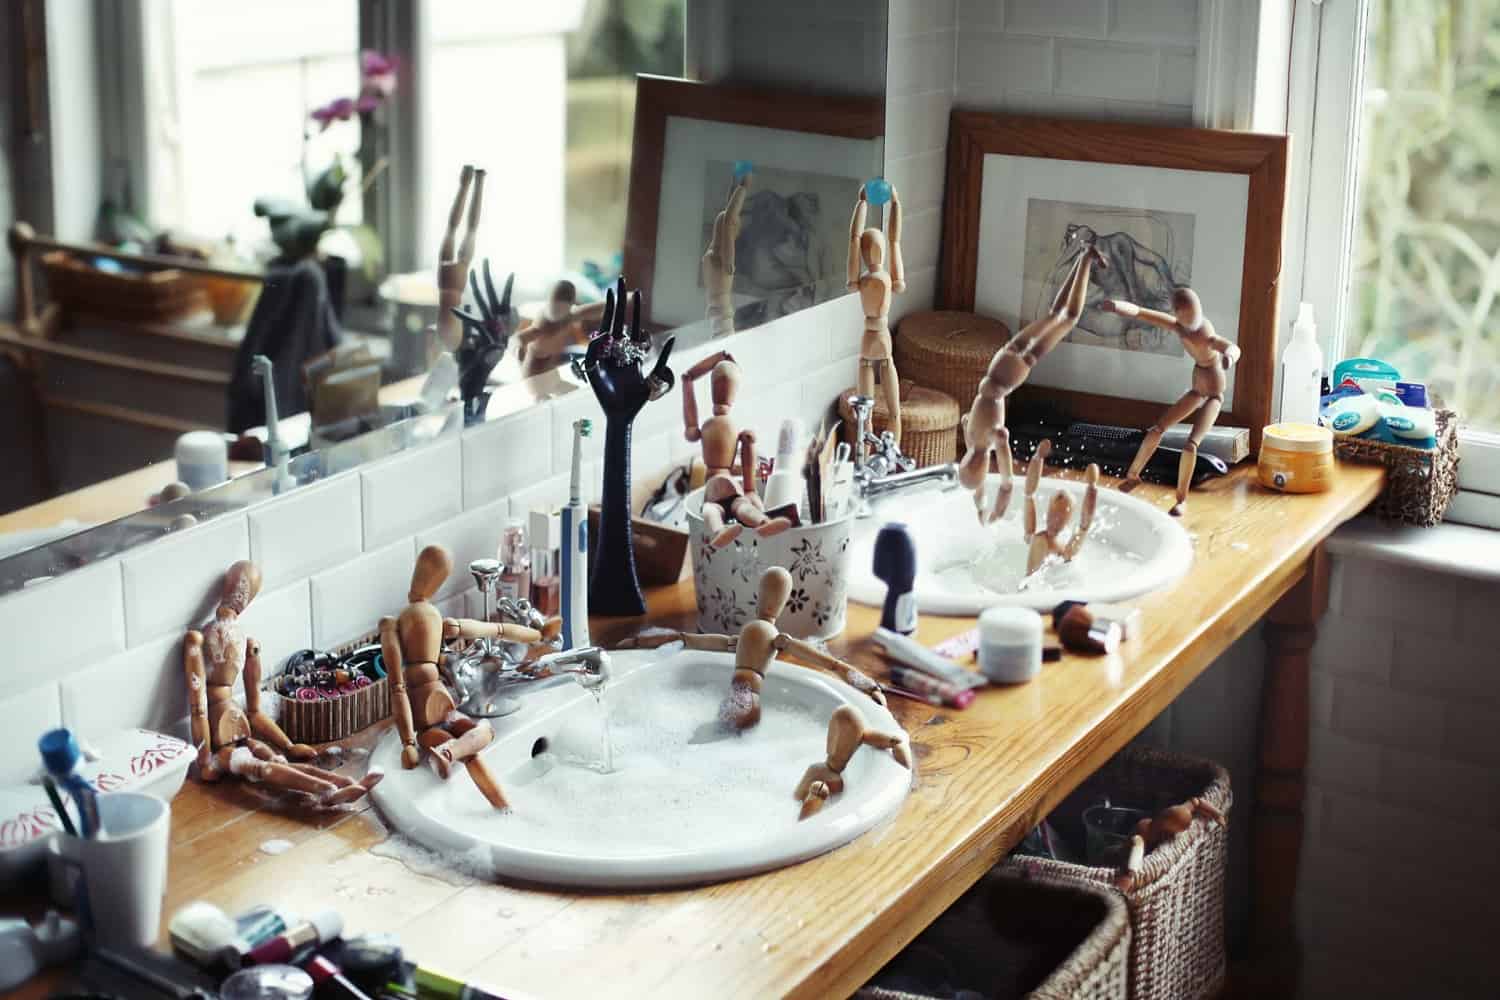 kitchen sink leaking